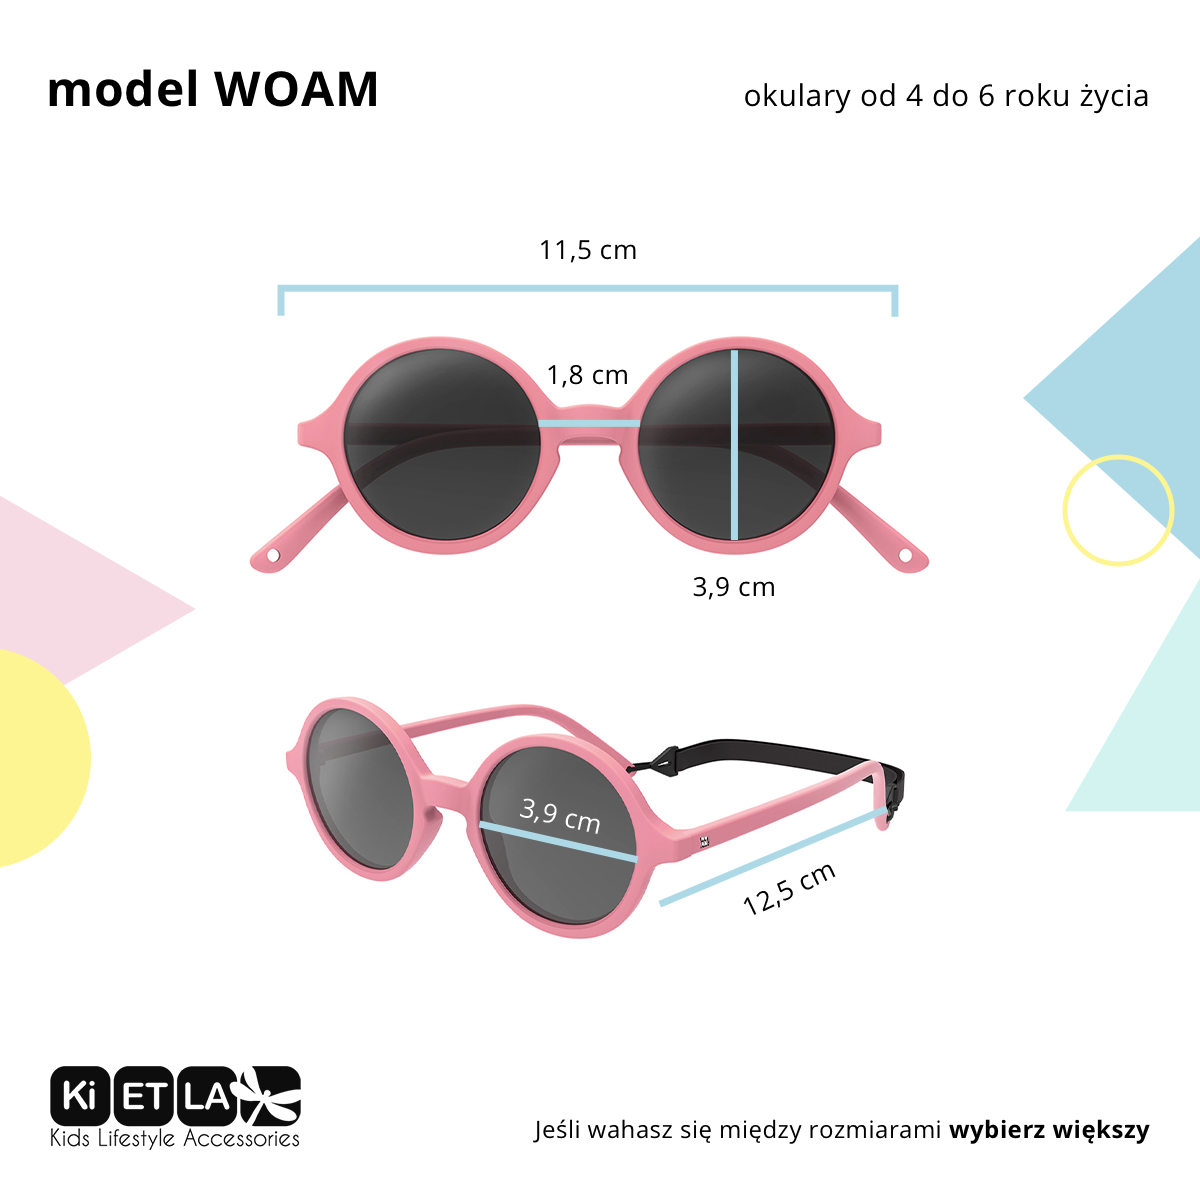 Okulary przeciwsłoneczne WOAM by Ki ET LA Sky Blue 0-2